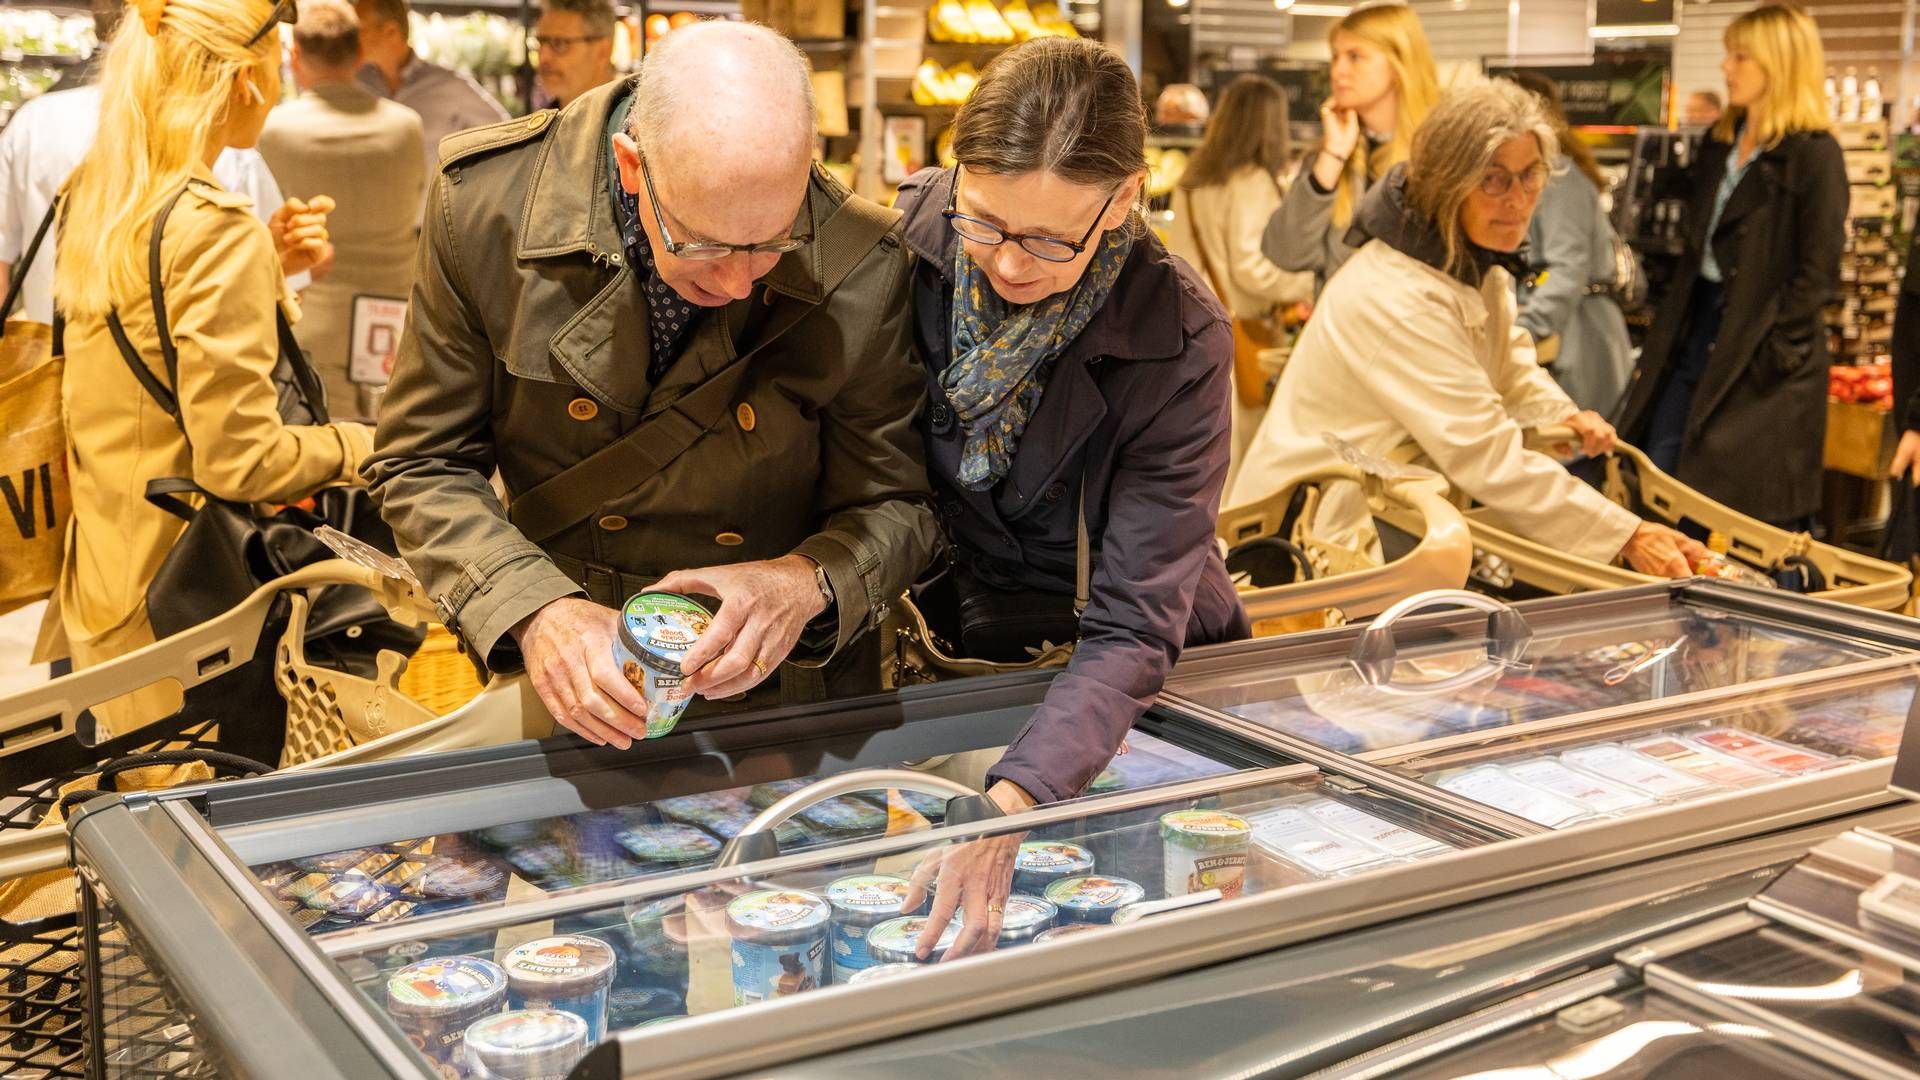 Forbrugere, der går efter ål i Meny, kommer snart til at gå forgæves. Salget i dagligvarekæden indstilles nemlig helt. | Foto: Mikal Schlosser